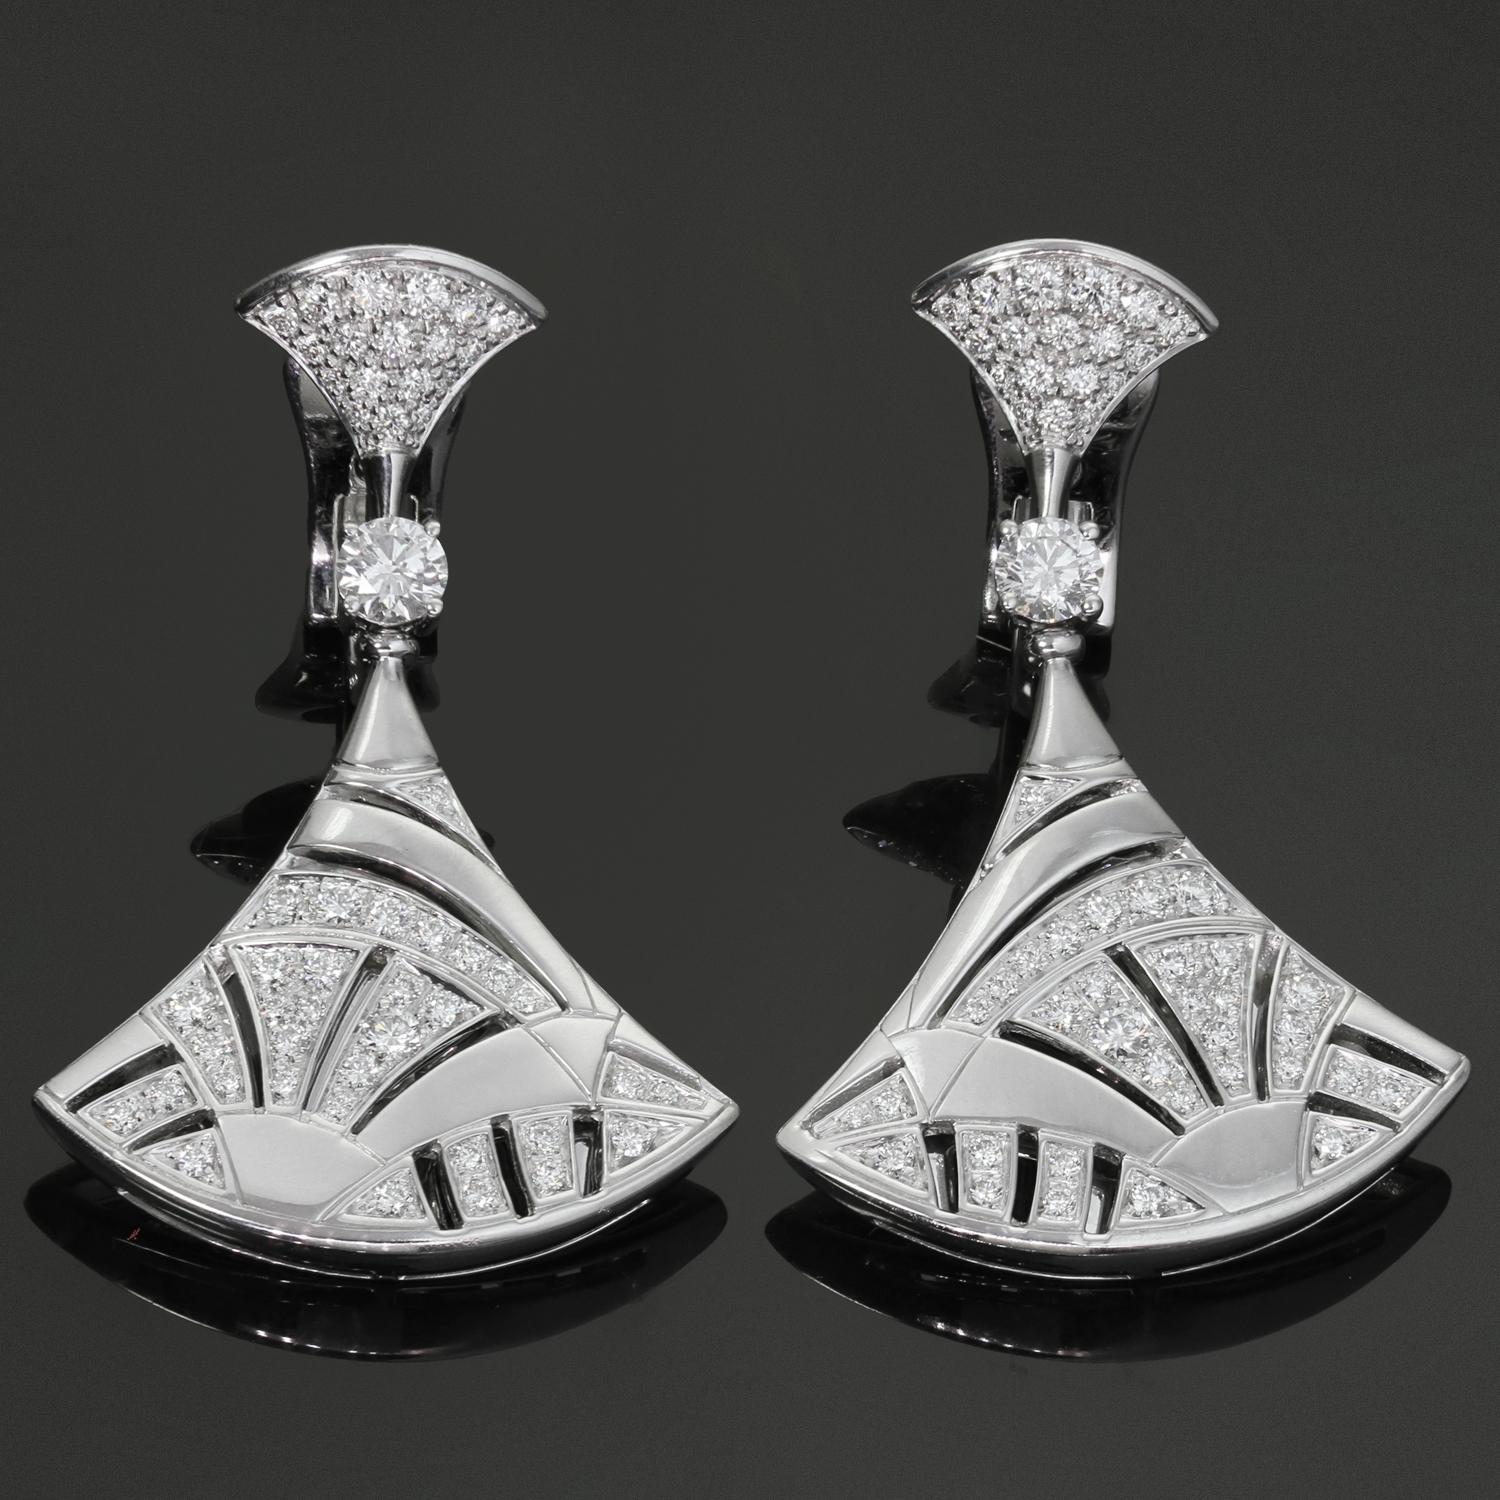 Diese fabelhaften Bvlgari-Ohrringe aus der klassischen Collection'S Diva's Dream zeichnen sich durch ein Mosaikfächer-Design aus, das in 18 Karat Weißgold gefertigt und mit 106 runden Brillanten E-F-G VVS1-VVS2 mit einem geschätzten Gewicht von 2,10